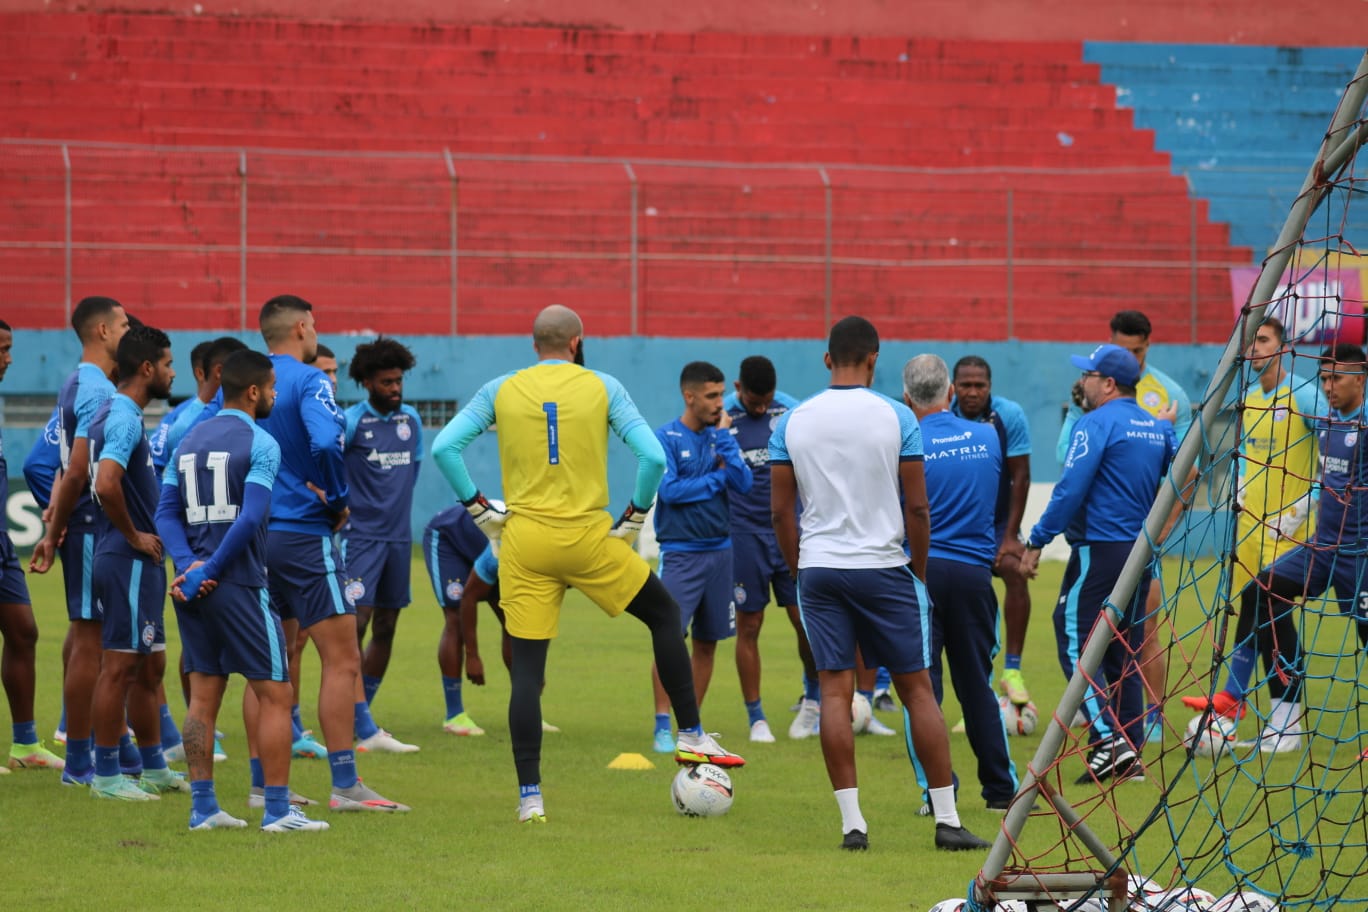  Brusque recebe o “em crise” Bahia com novo treinador